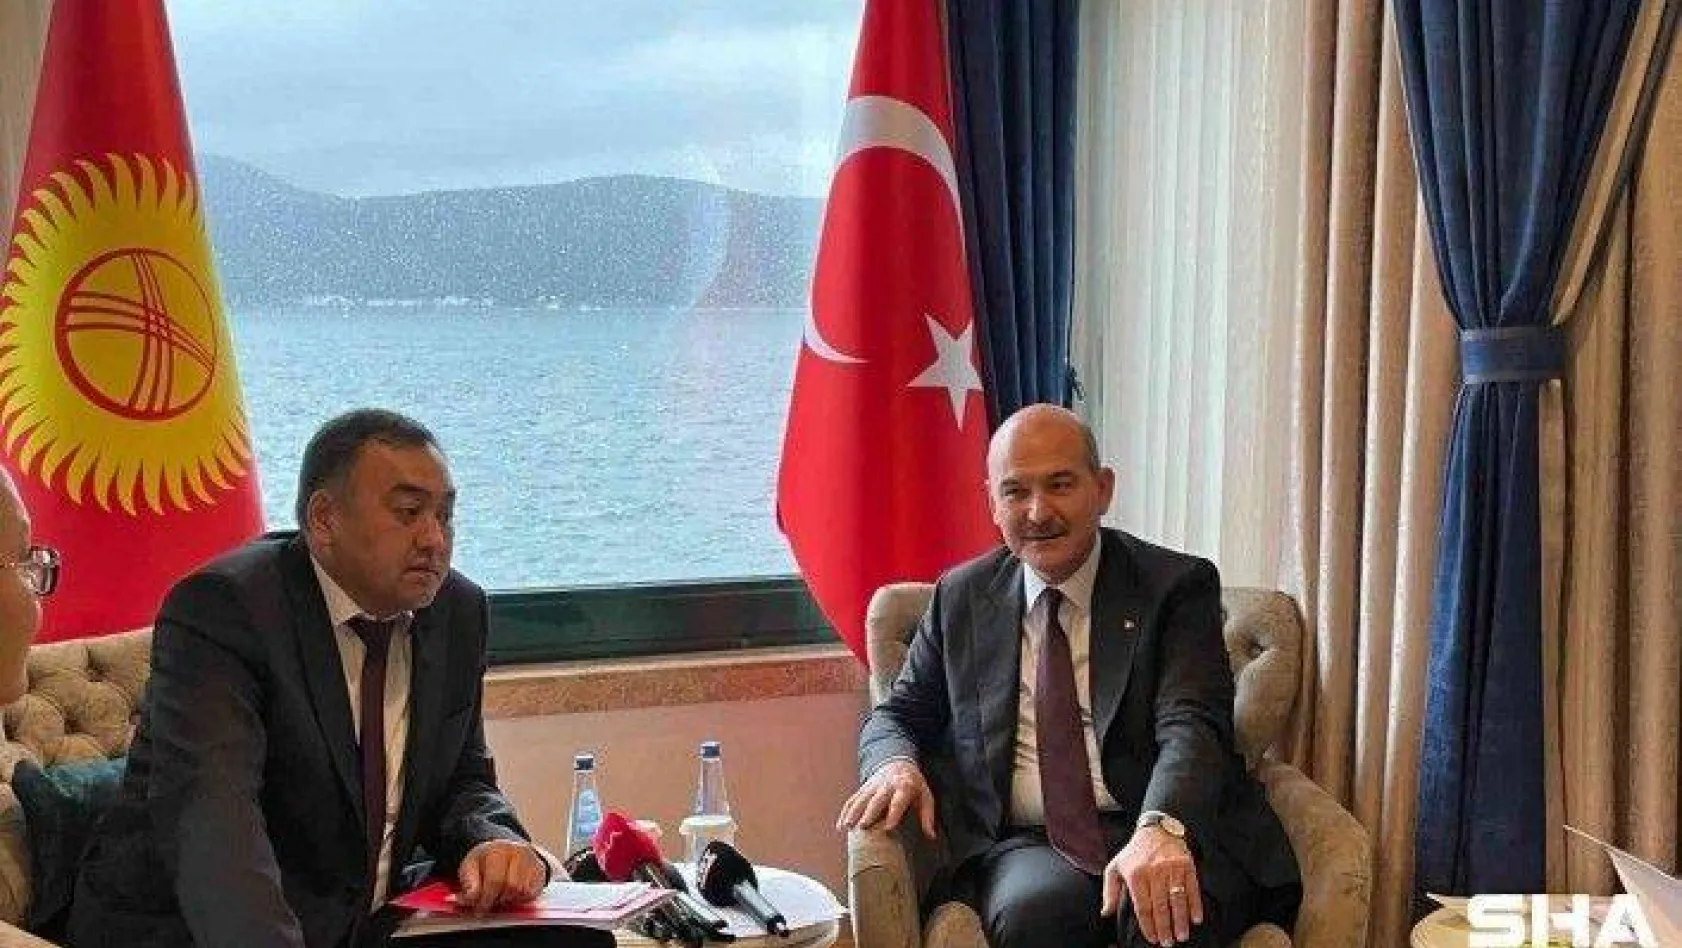 İçişleri Bakanı Soylu, Kırgız mevkidaşı Niyazbekov'la bir araya geldi